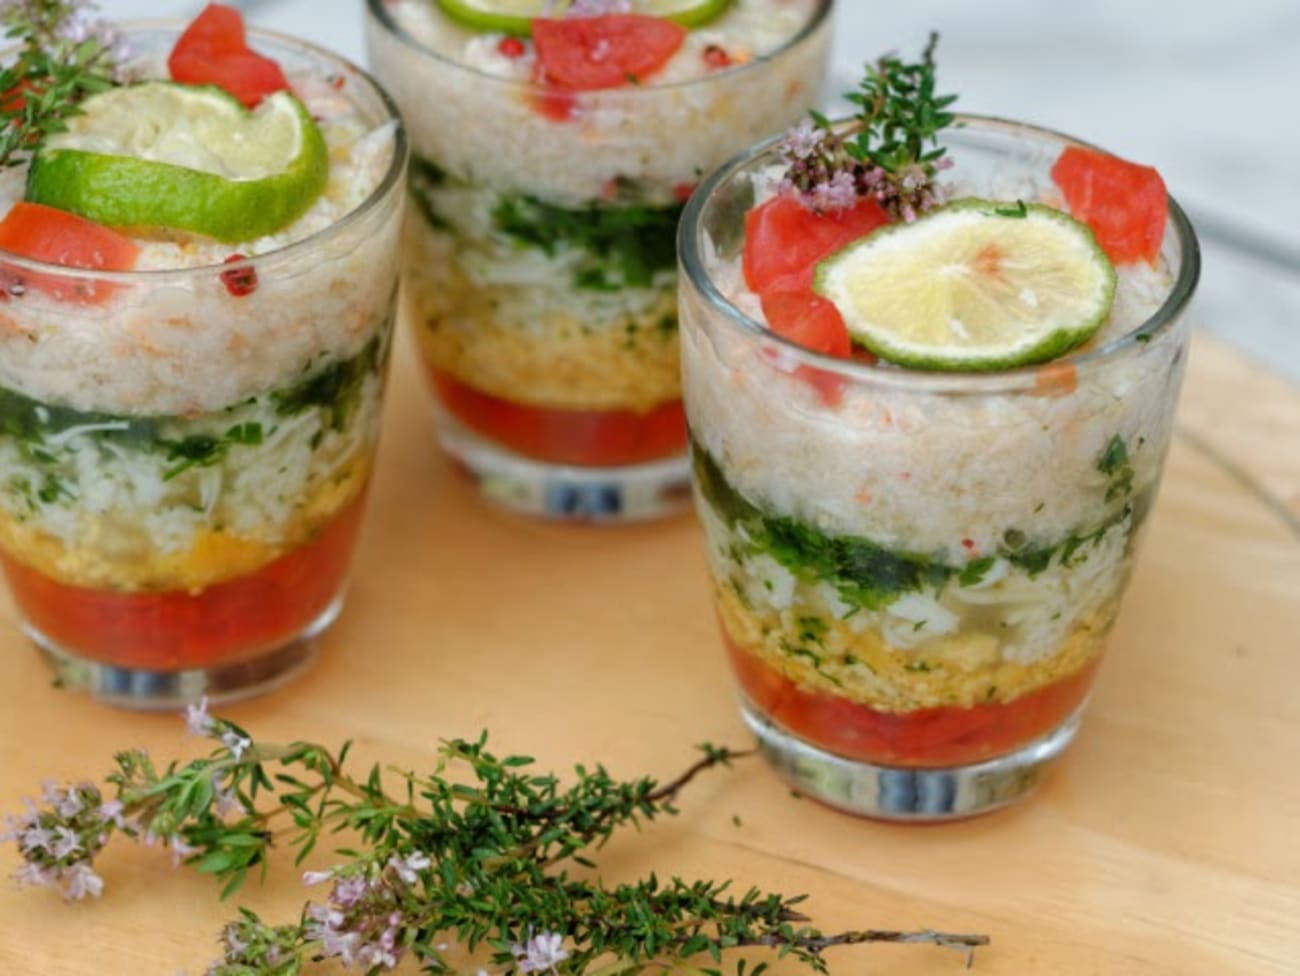 Verrines mimosa au crabe rapide : découvrez les recettes de cuisine de  Femme Actuelle Le MAG